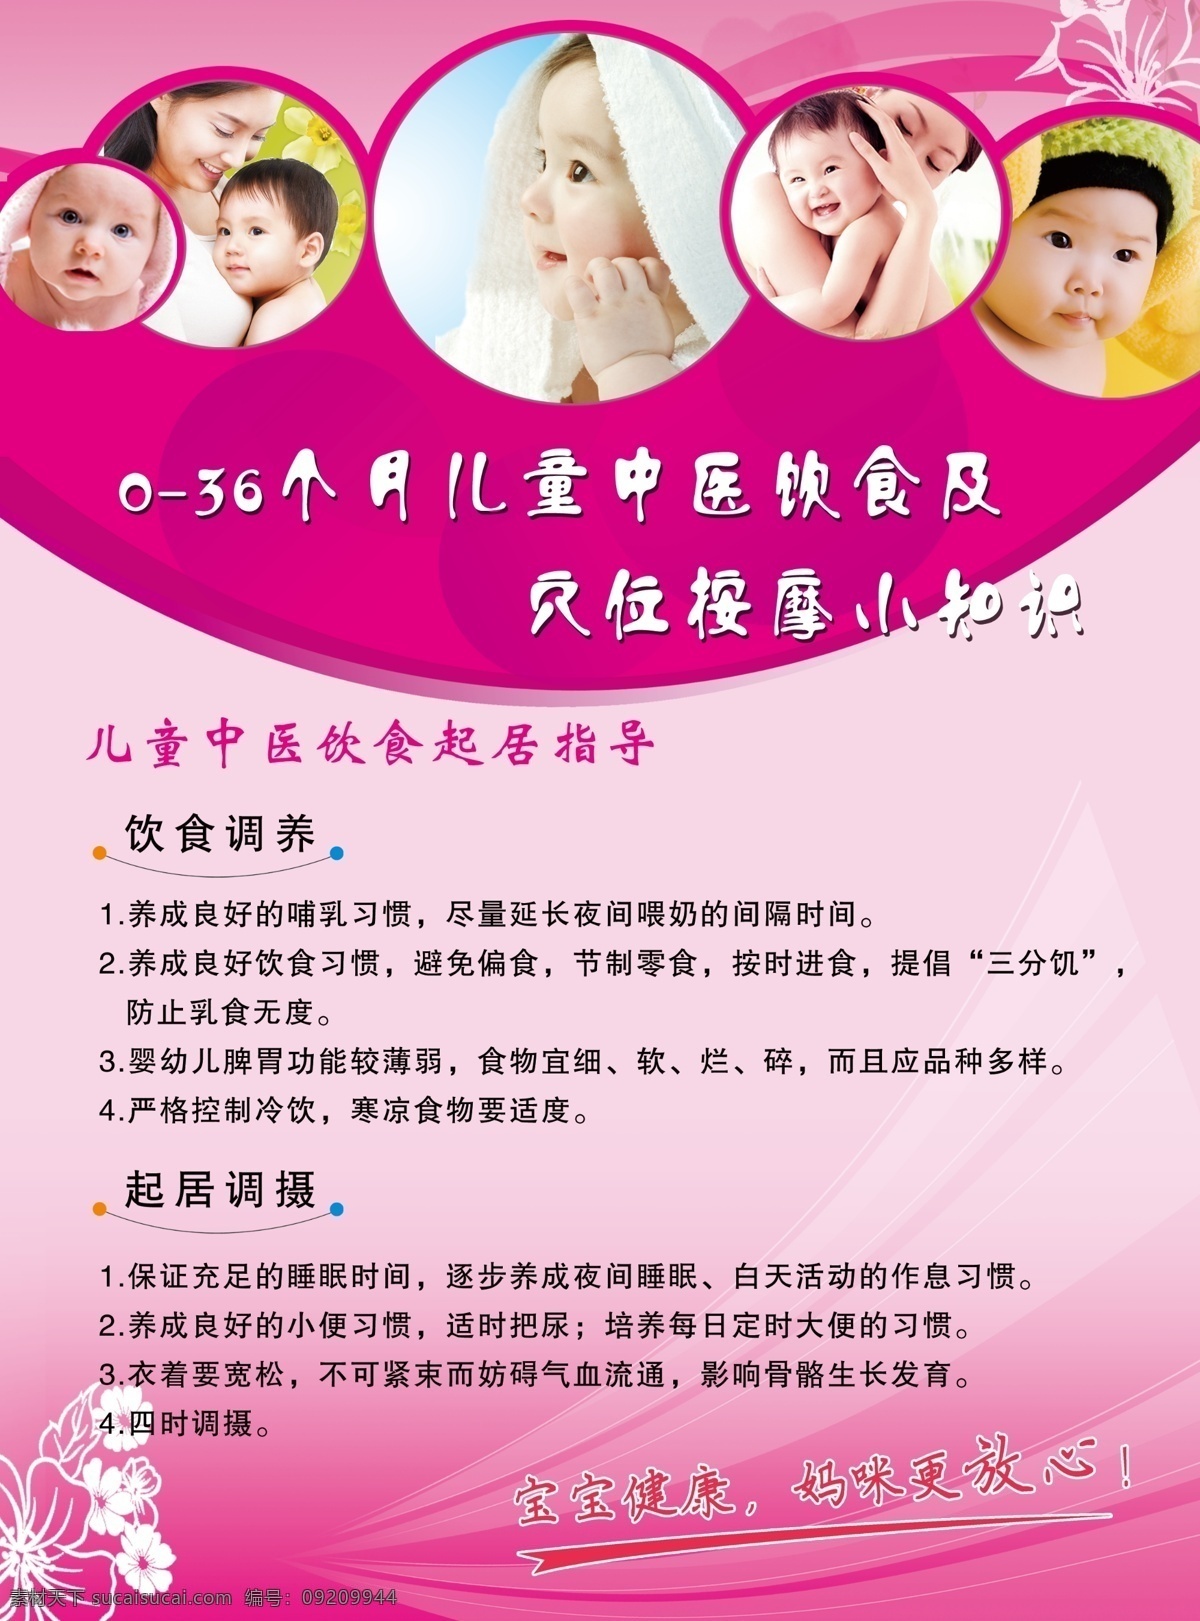 母婴宣传页 婴儿 母婴 婴儿饮食 小儿推拿 小儿按摩 宣传页 dm宣传单